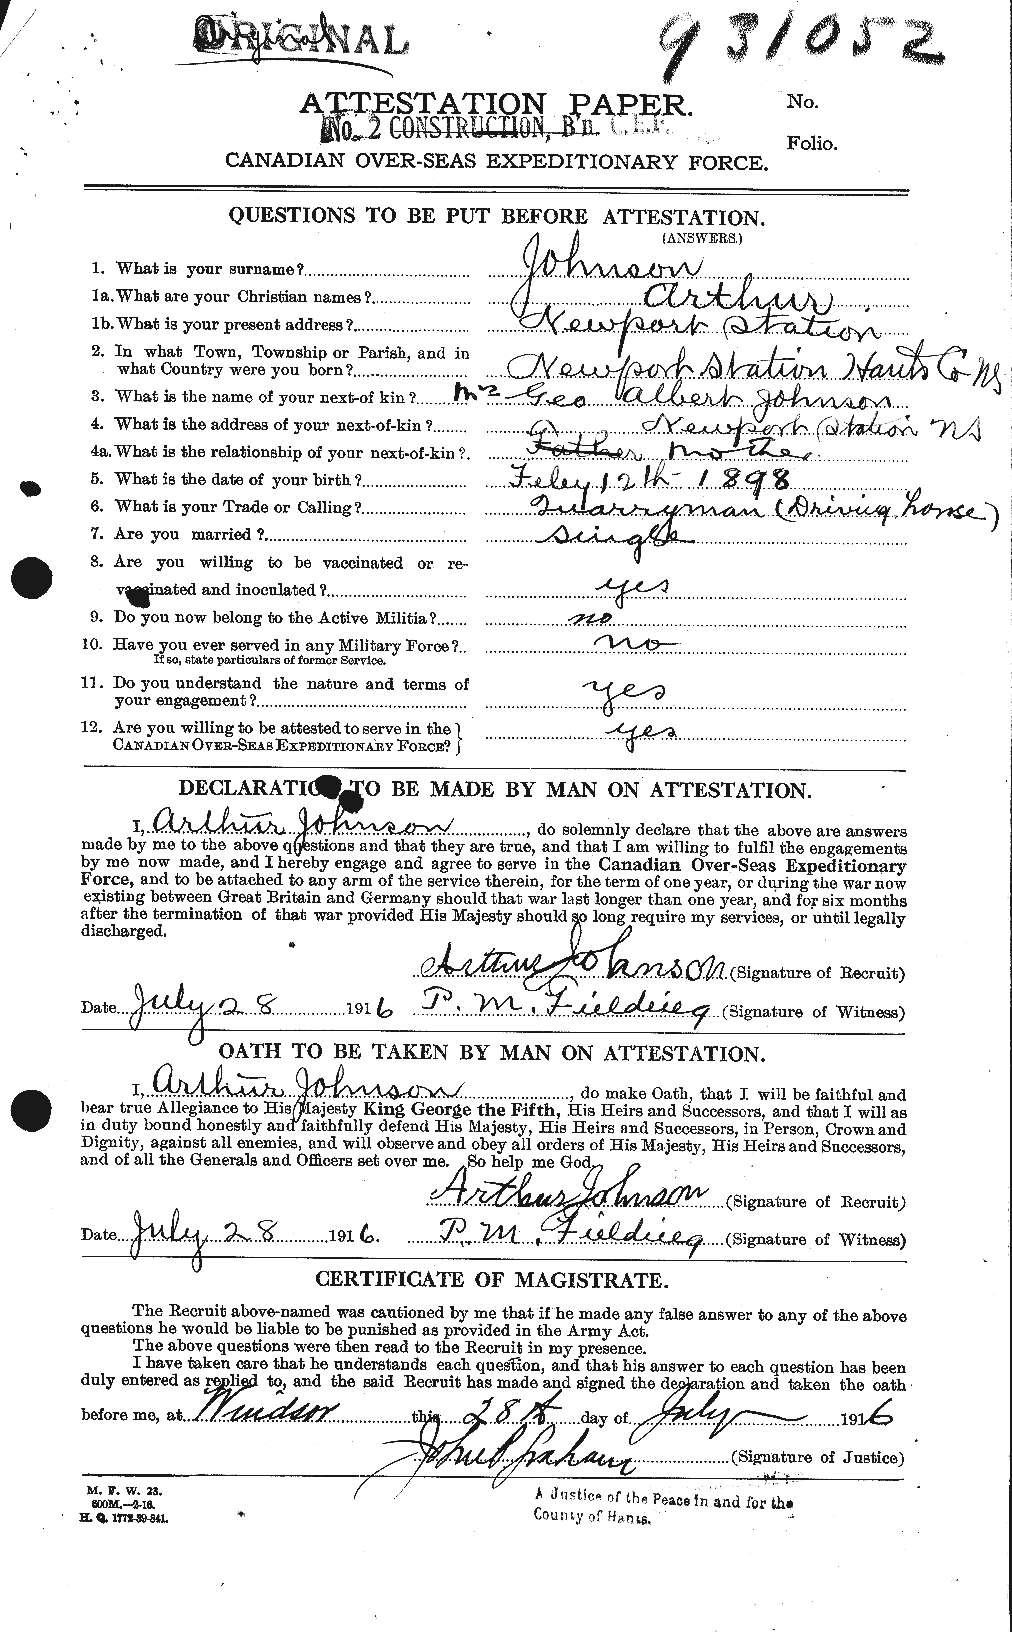 Dossiers du Personnel de la Première Guerre mondiale - CEC 421248a